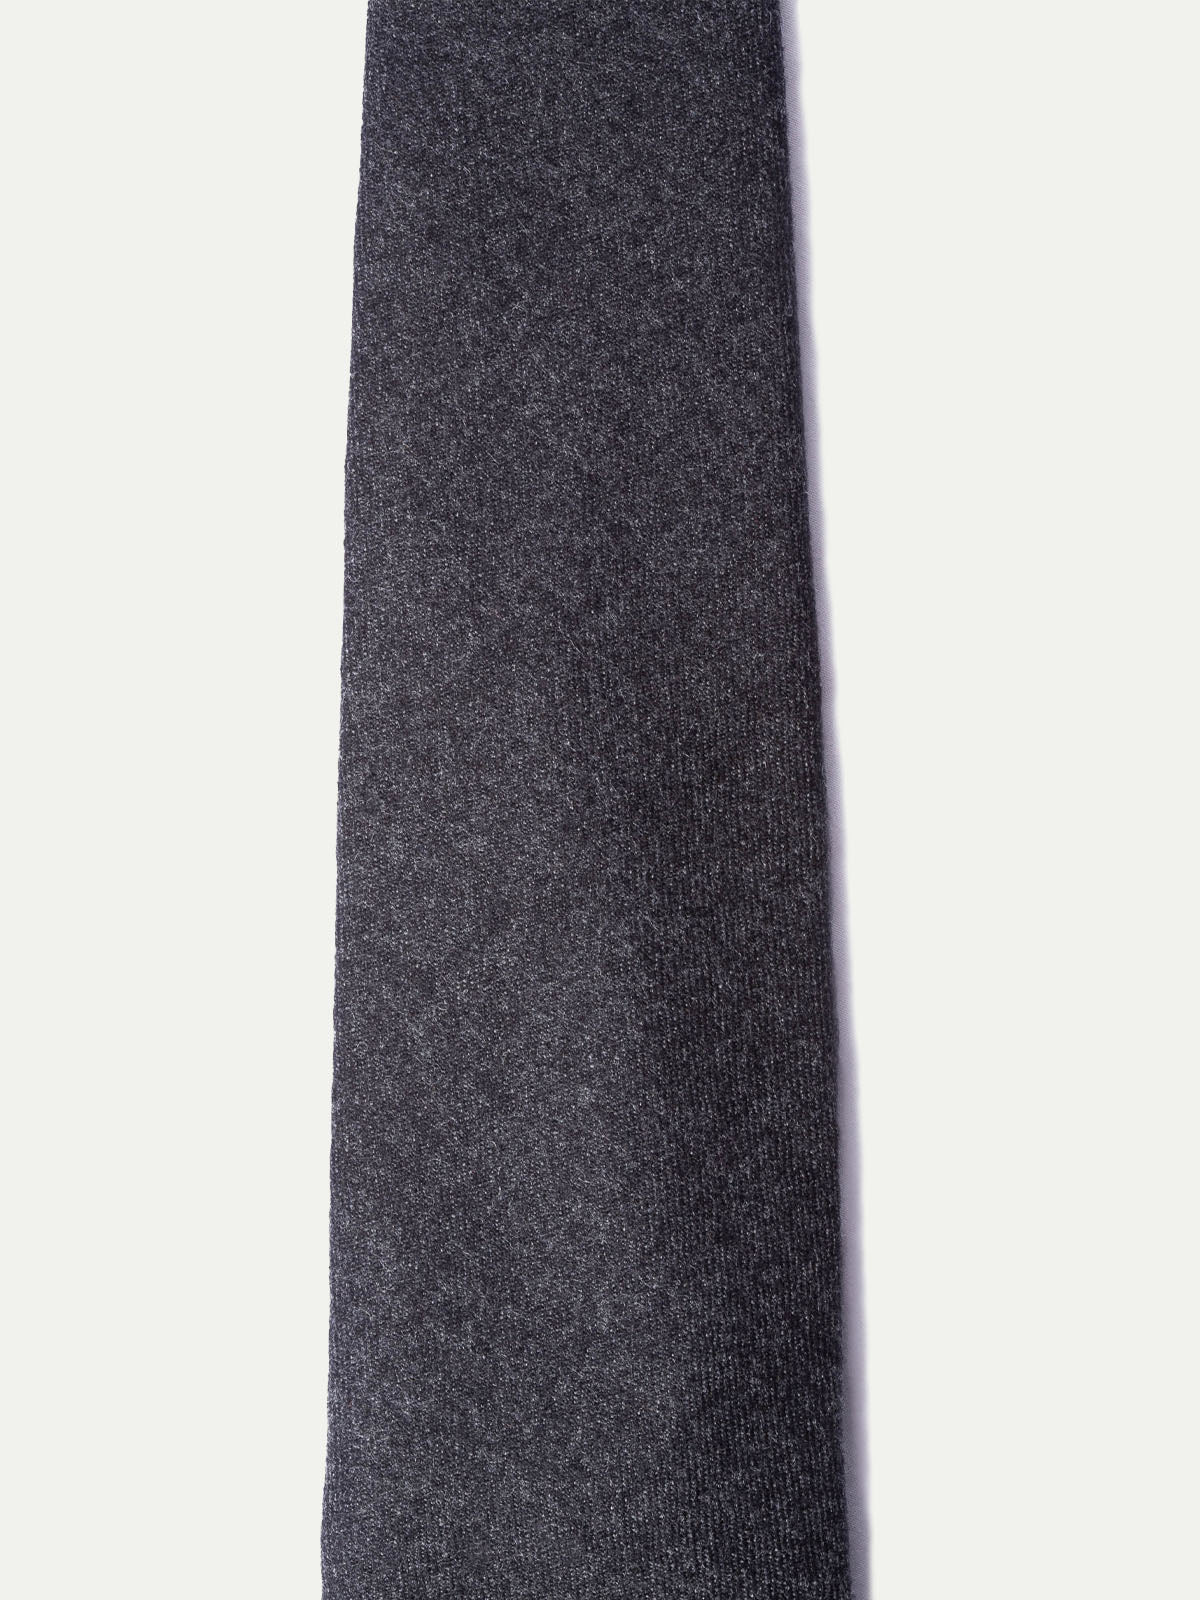 Cravate en flanelle gris foncé - Fabriquée à la main en Italie